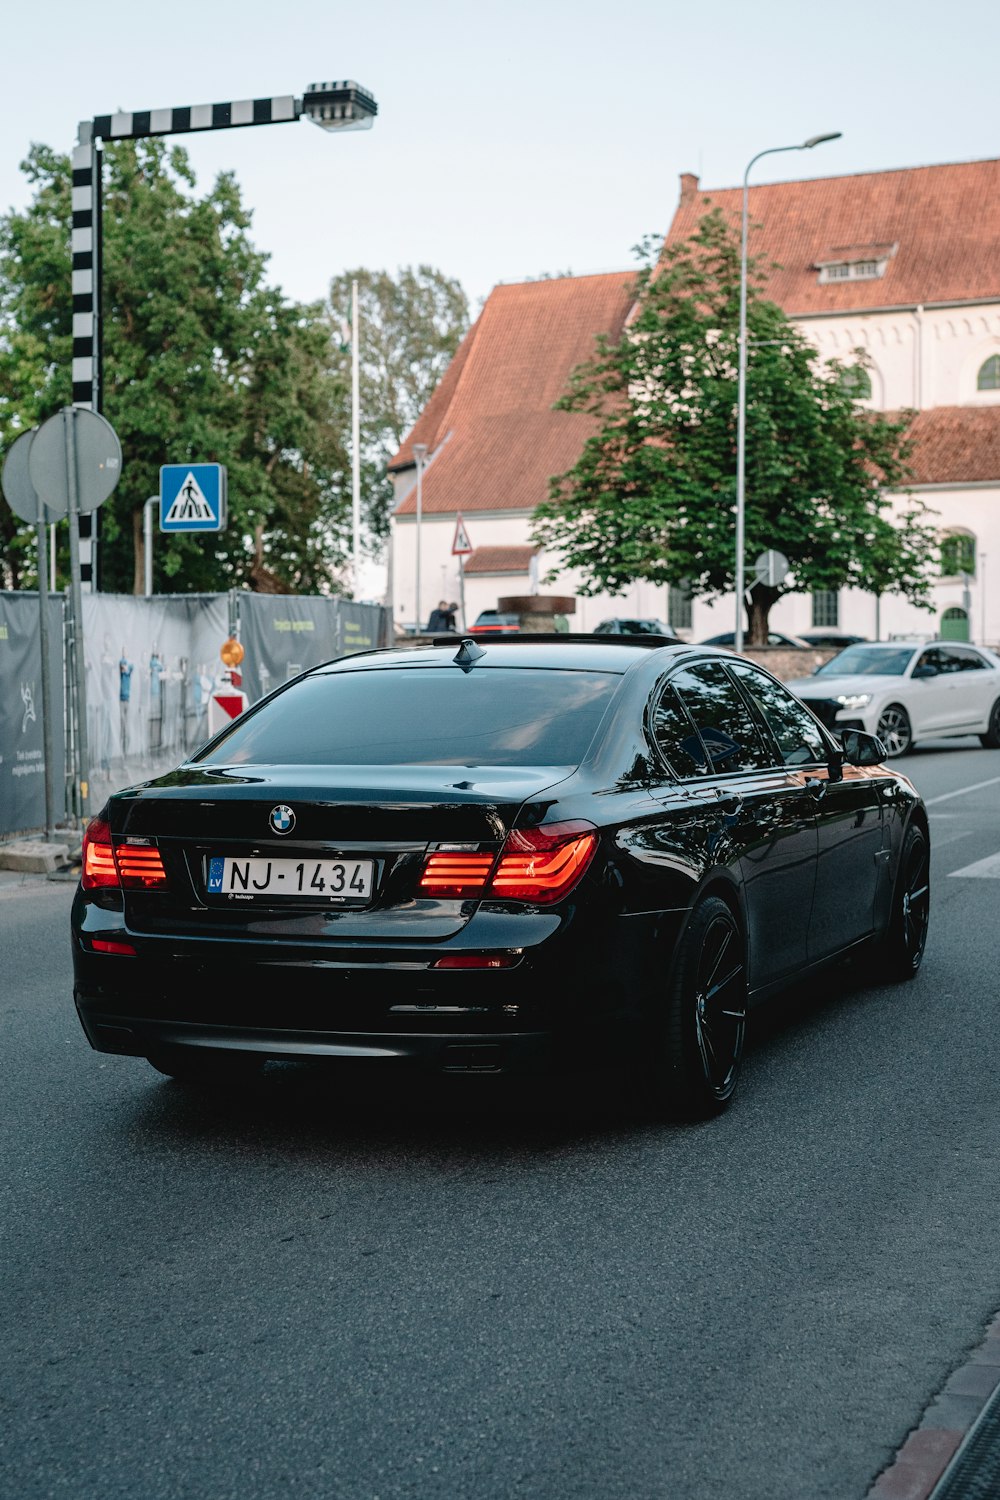 Un'auto nera che guida lungo una strada vicino a un semaforo